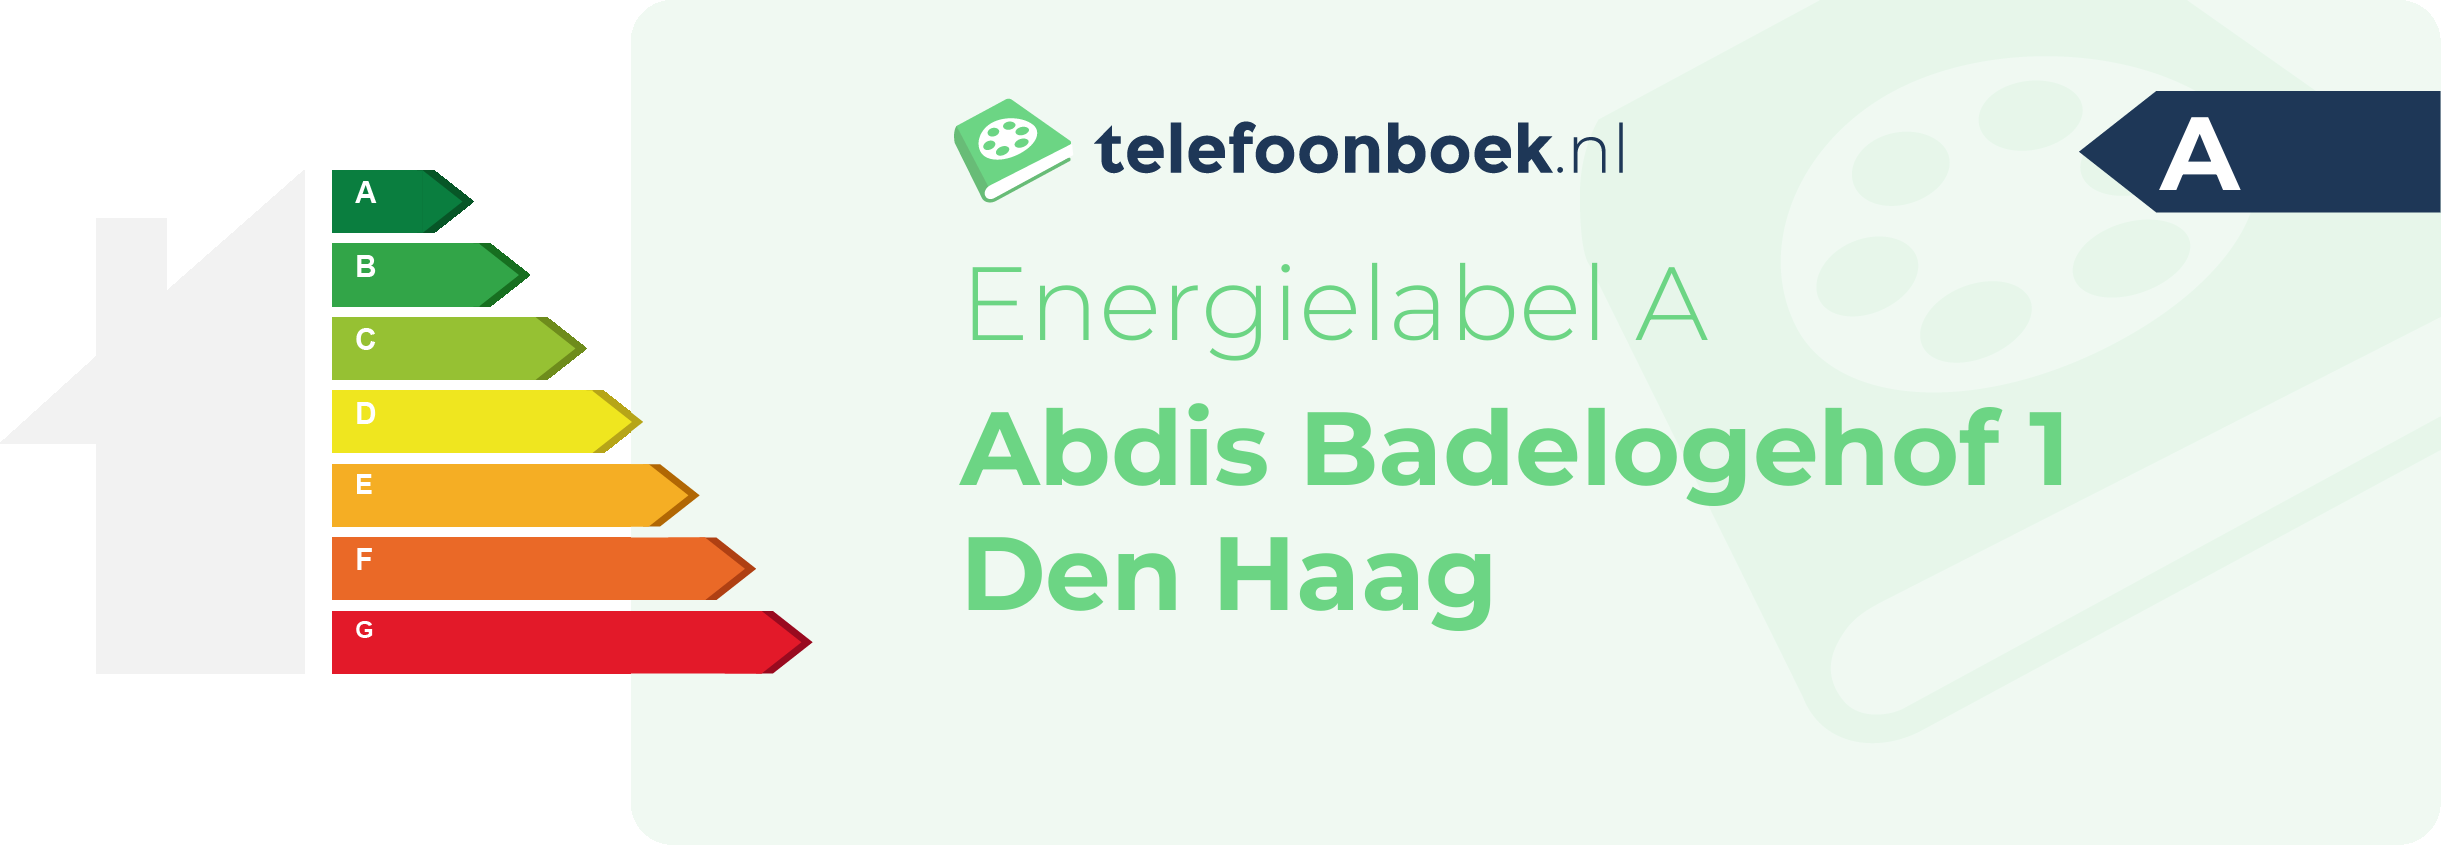 Energielabel Abdis Badelogehof 1 Den Haag